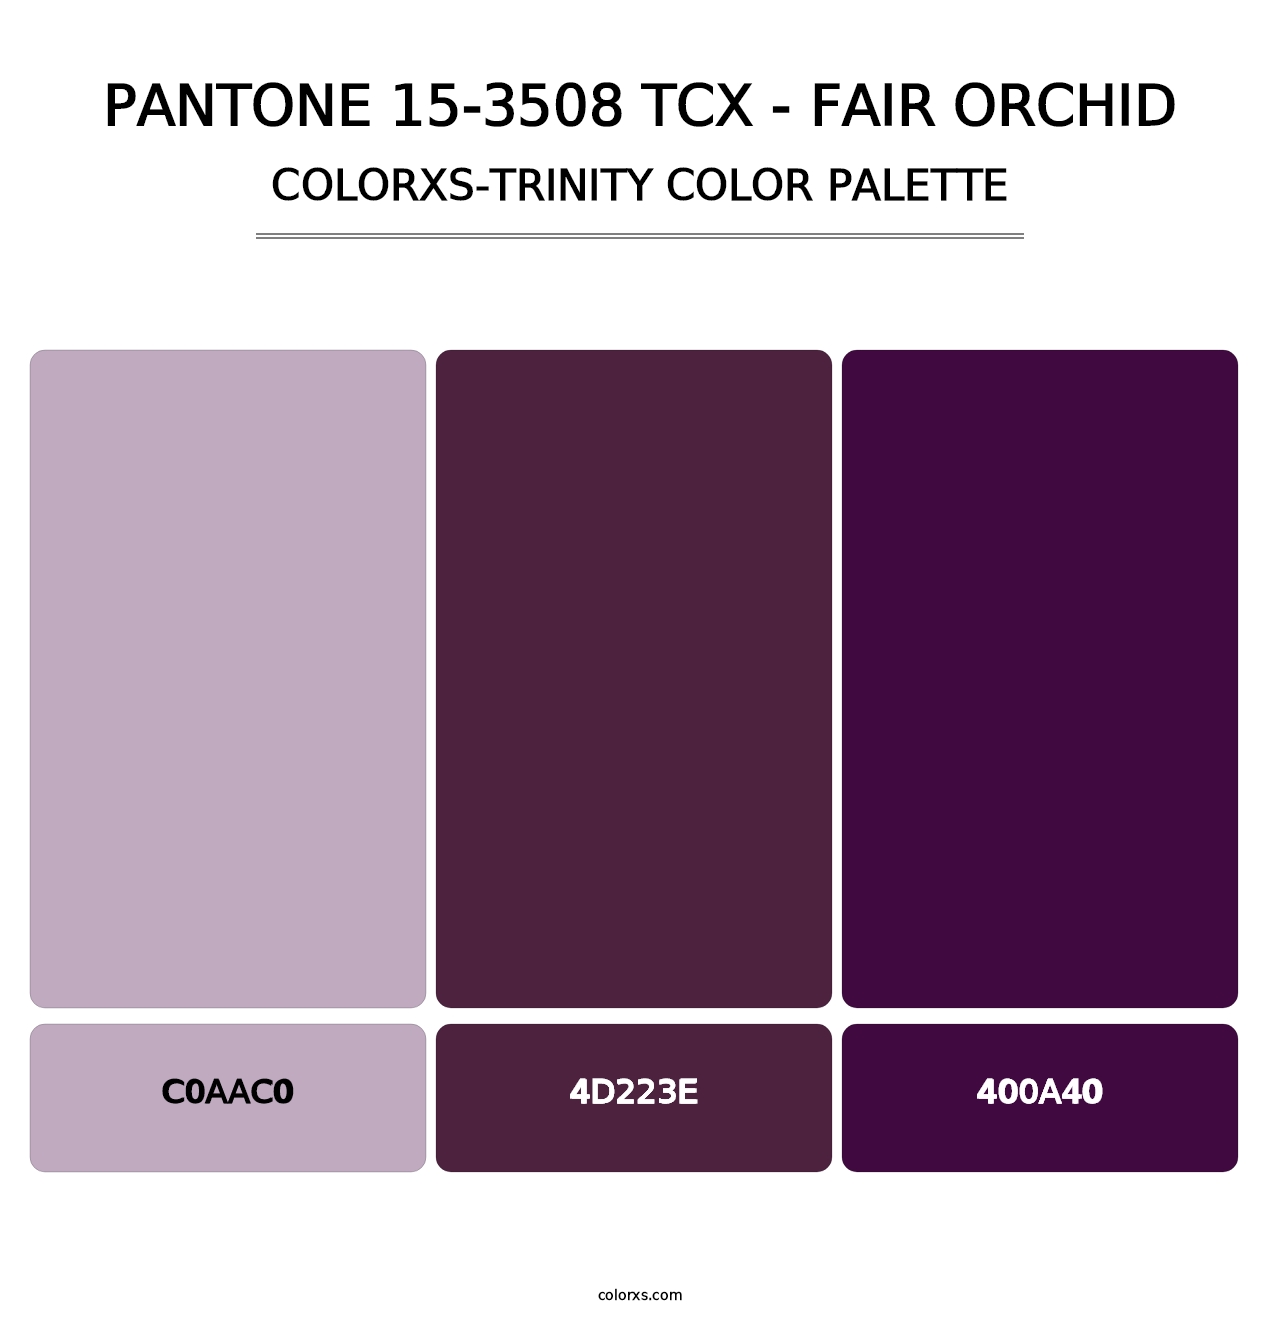 PANTONE 15-3508 TCX - Fair Orchid - Colorxs Trinity Palette